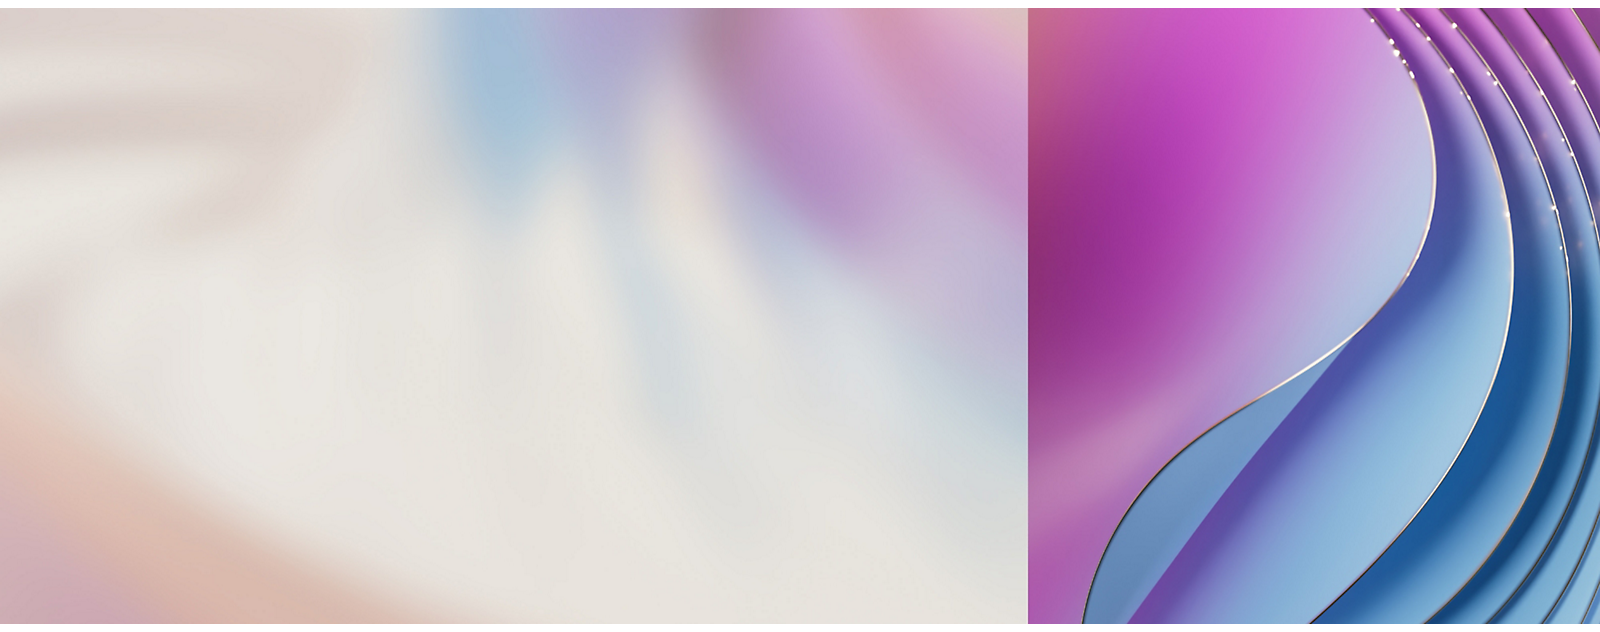 Abstrakter Hintergrund mit fließenden Farbverläufen, die von hellrosa zu blau übergehen, mit geschwungenen Linien und einem weichen, verschwommenen Fokus.